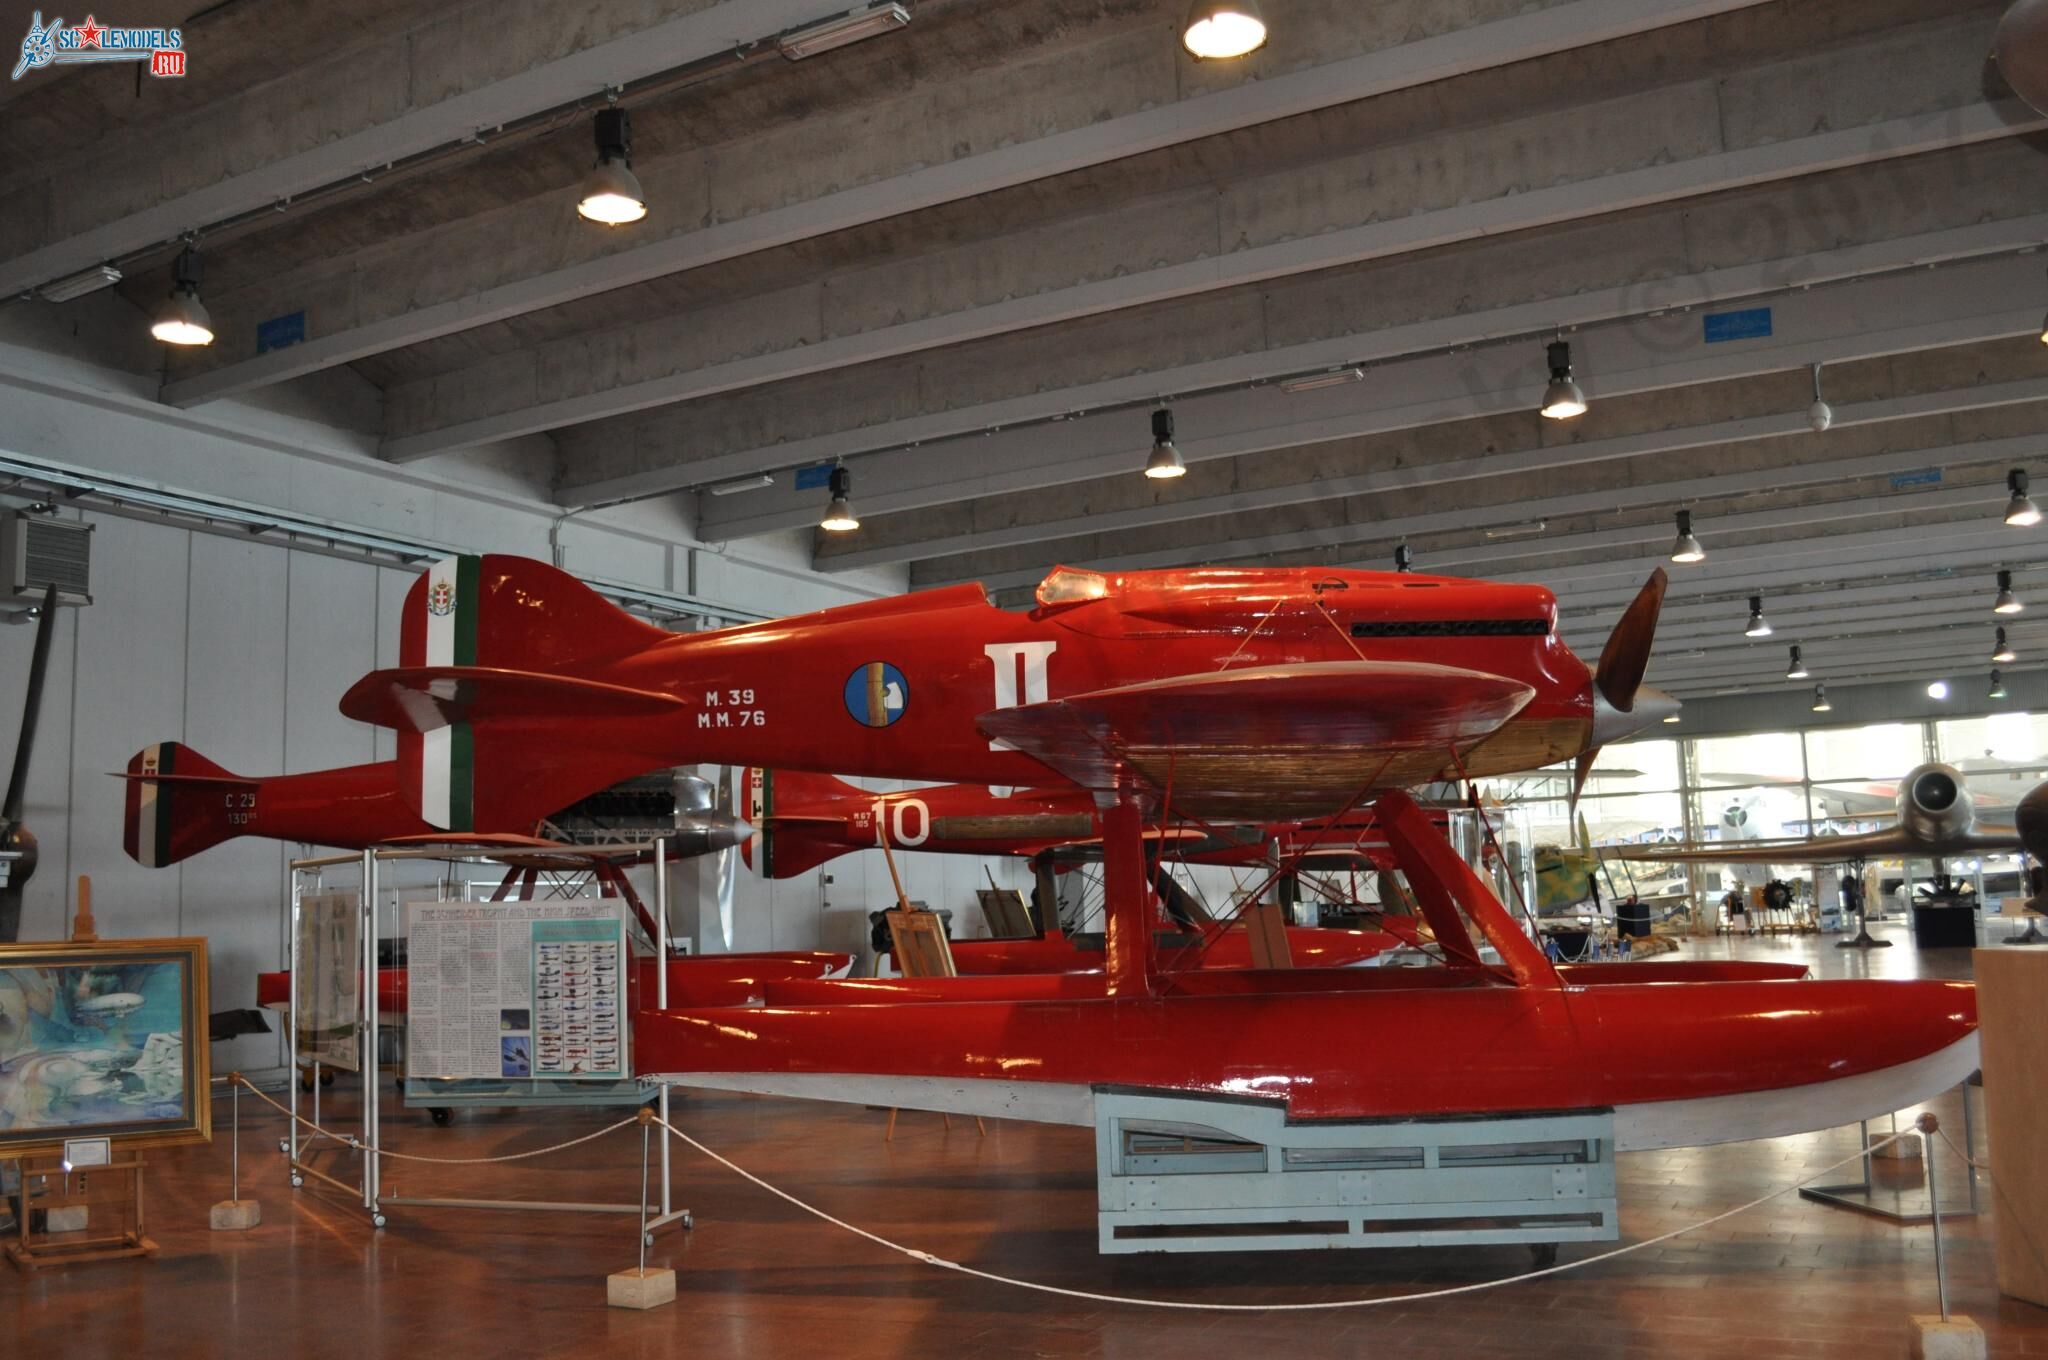 Museo_Storico_dell_Aeronautico_Militare_14.jpg